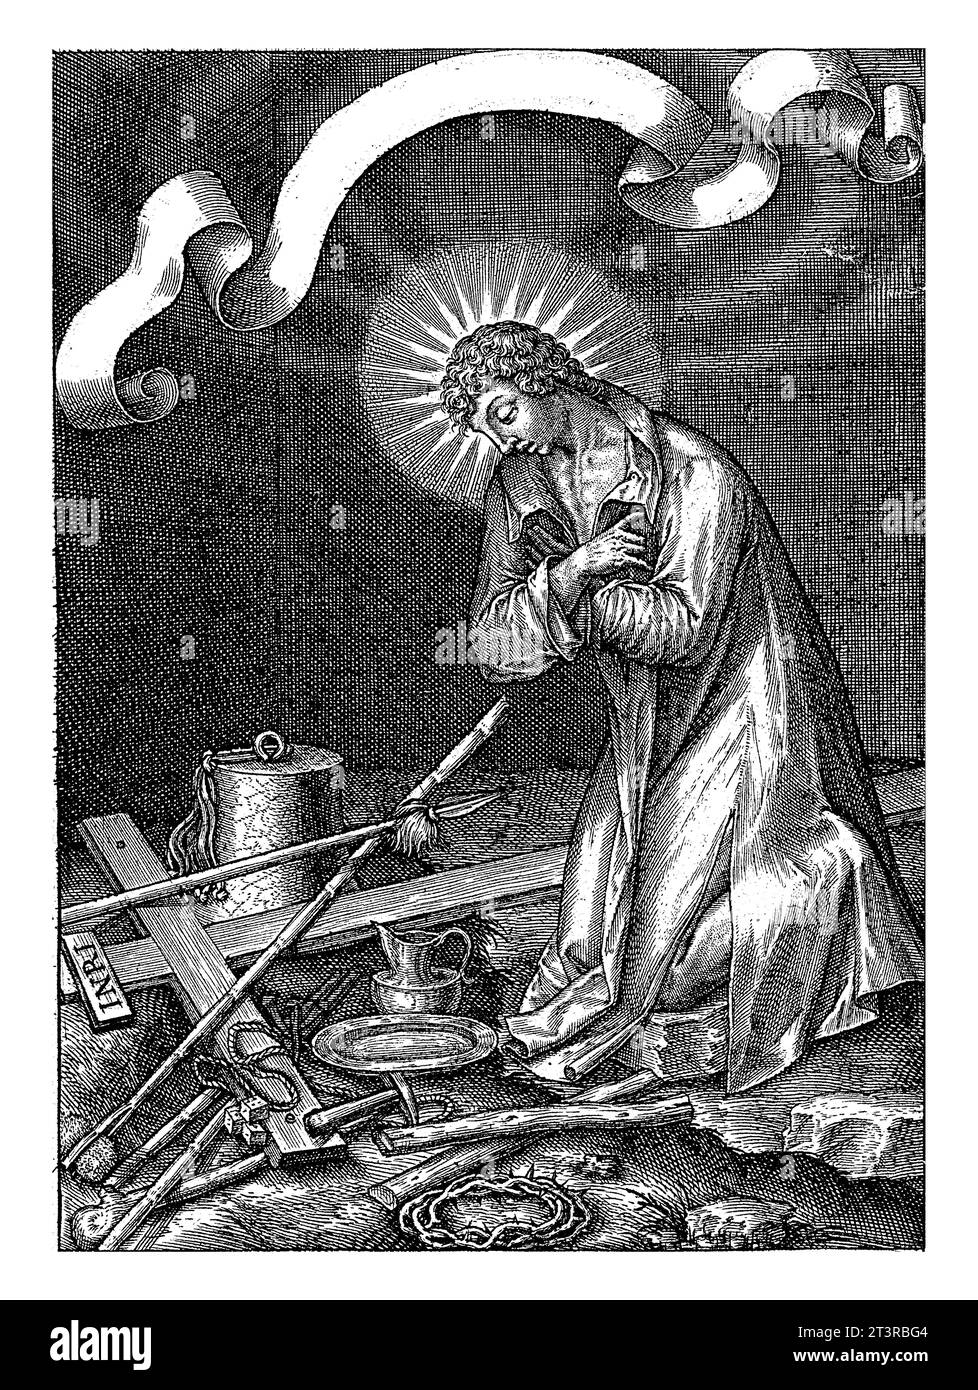 santo maschio sconosciuto, pensivo degli strumenti della passione, Hieronymus Wierix, 1563 - prima del 1619 Un santo maschio, la sua testa circondata da un alone, inginocchiato con la sua Foto Stock